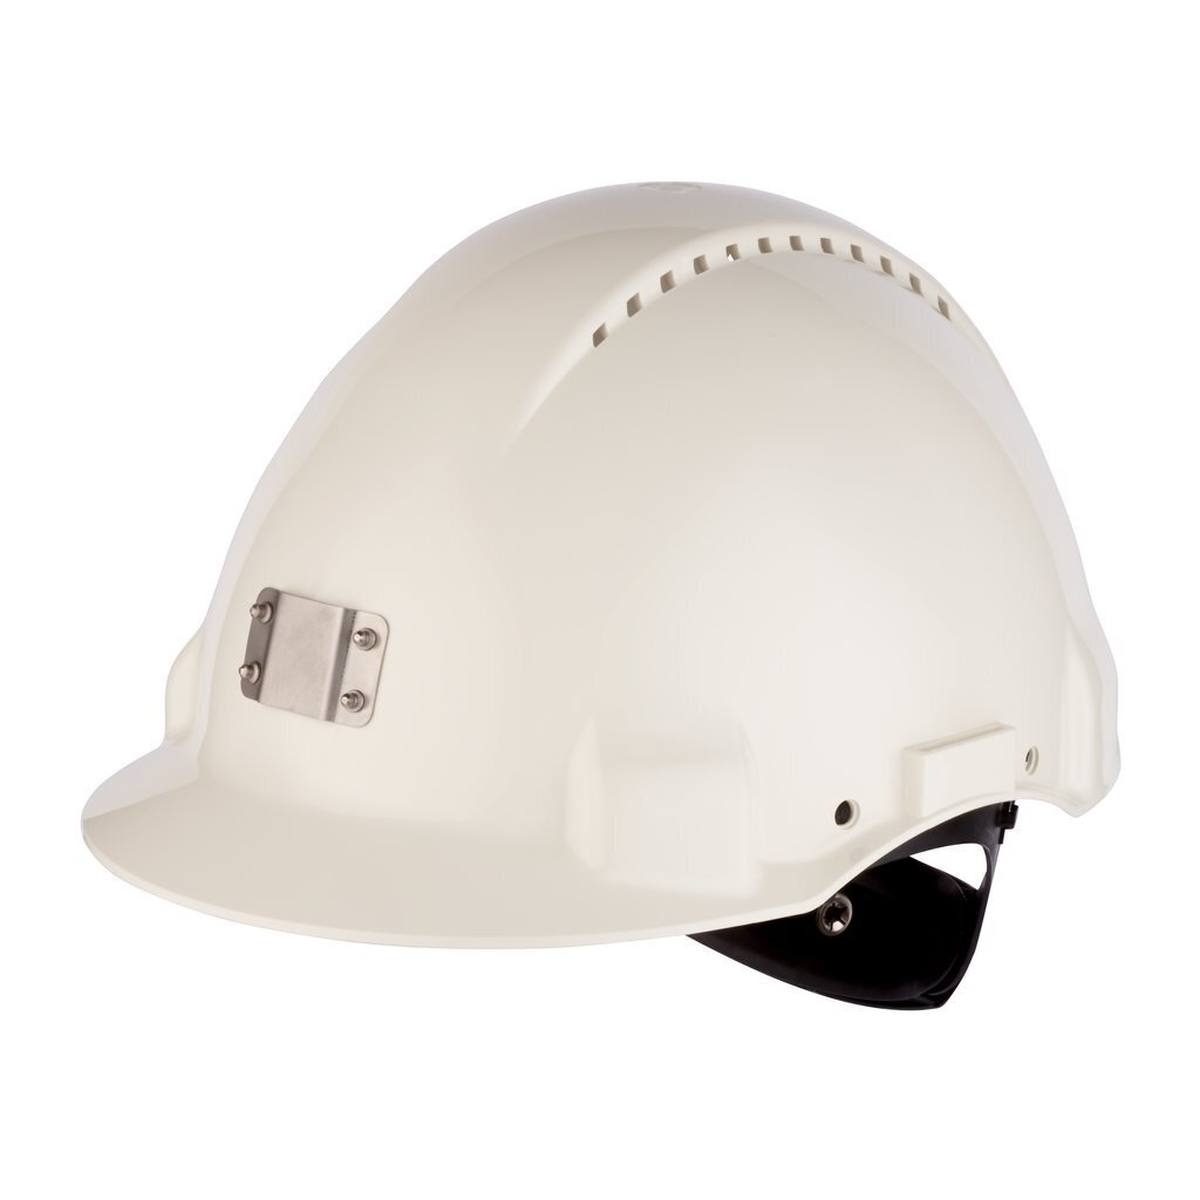 3M G3000 casque de protection G3000NUV-10-VI en blanc, uvicator, fermeture à cliquet, ventilé, bande de soudure en plastique, support de lampe